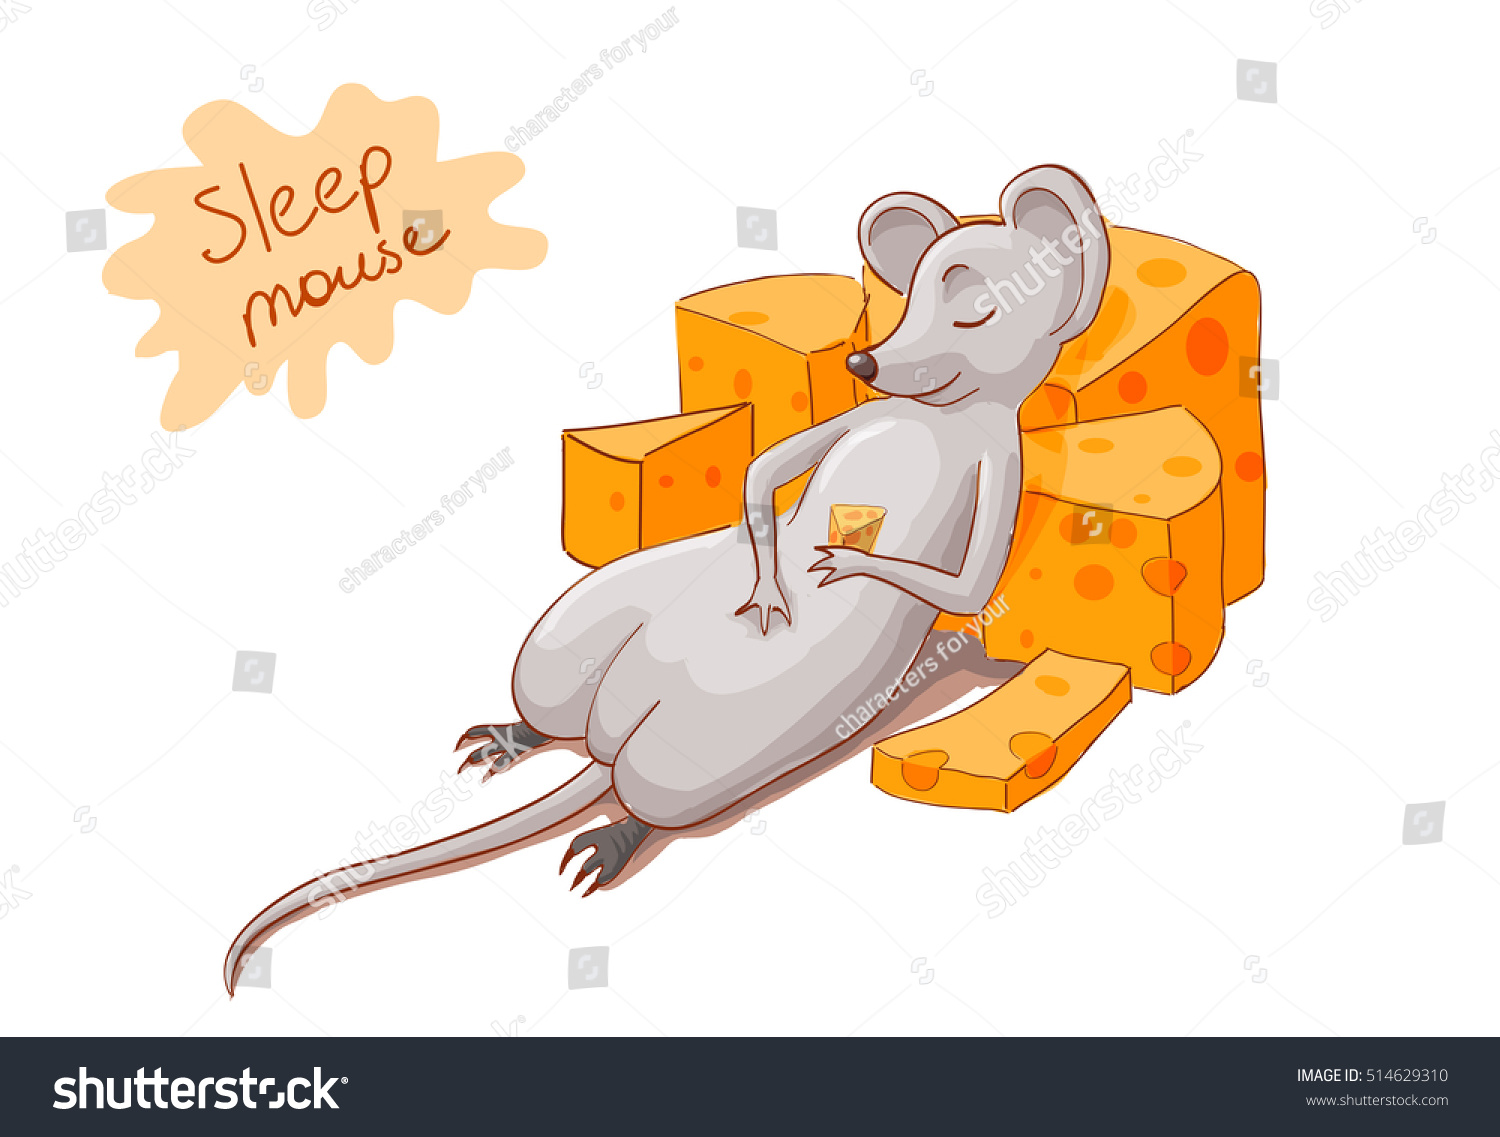 мышь залезла в кровать